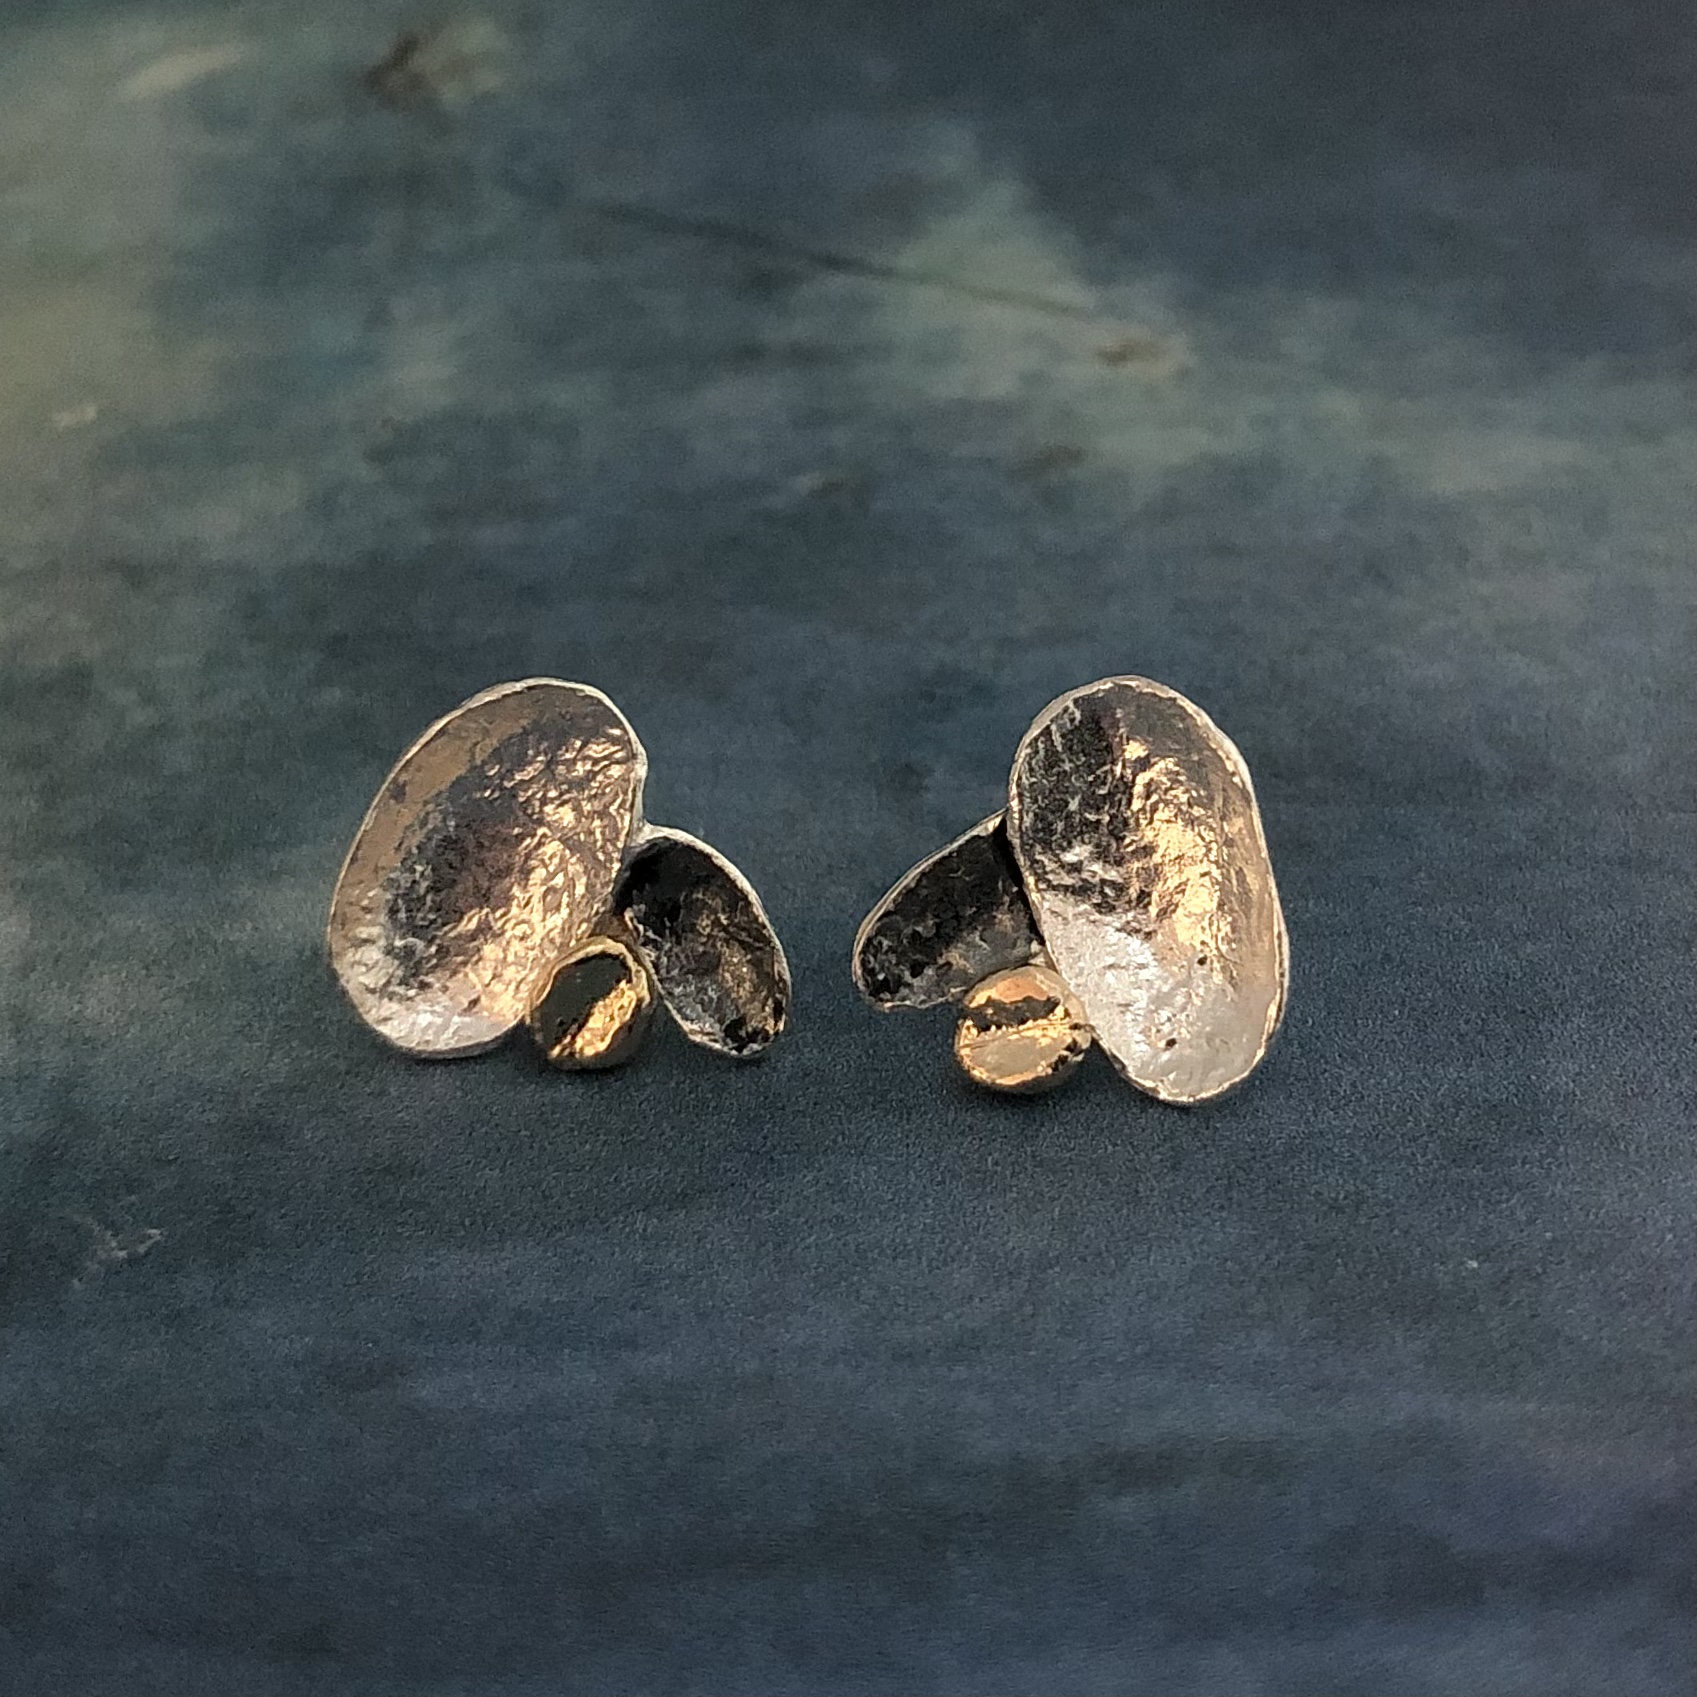 Angelique - Snygga örhängen i silver, guld och svart